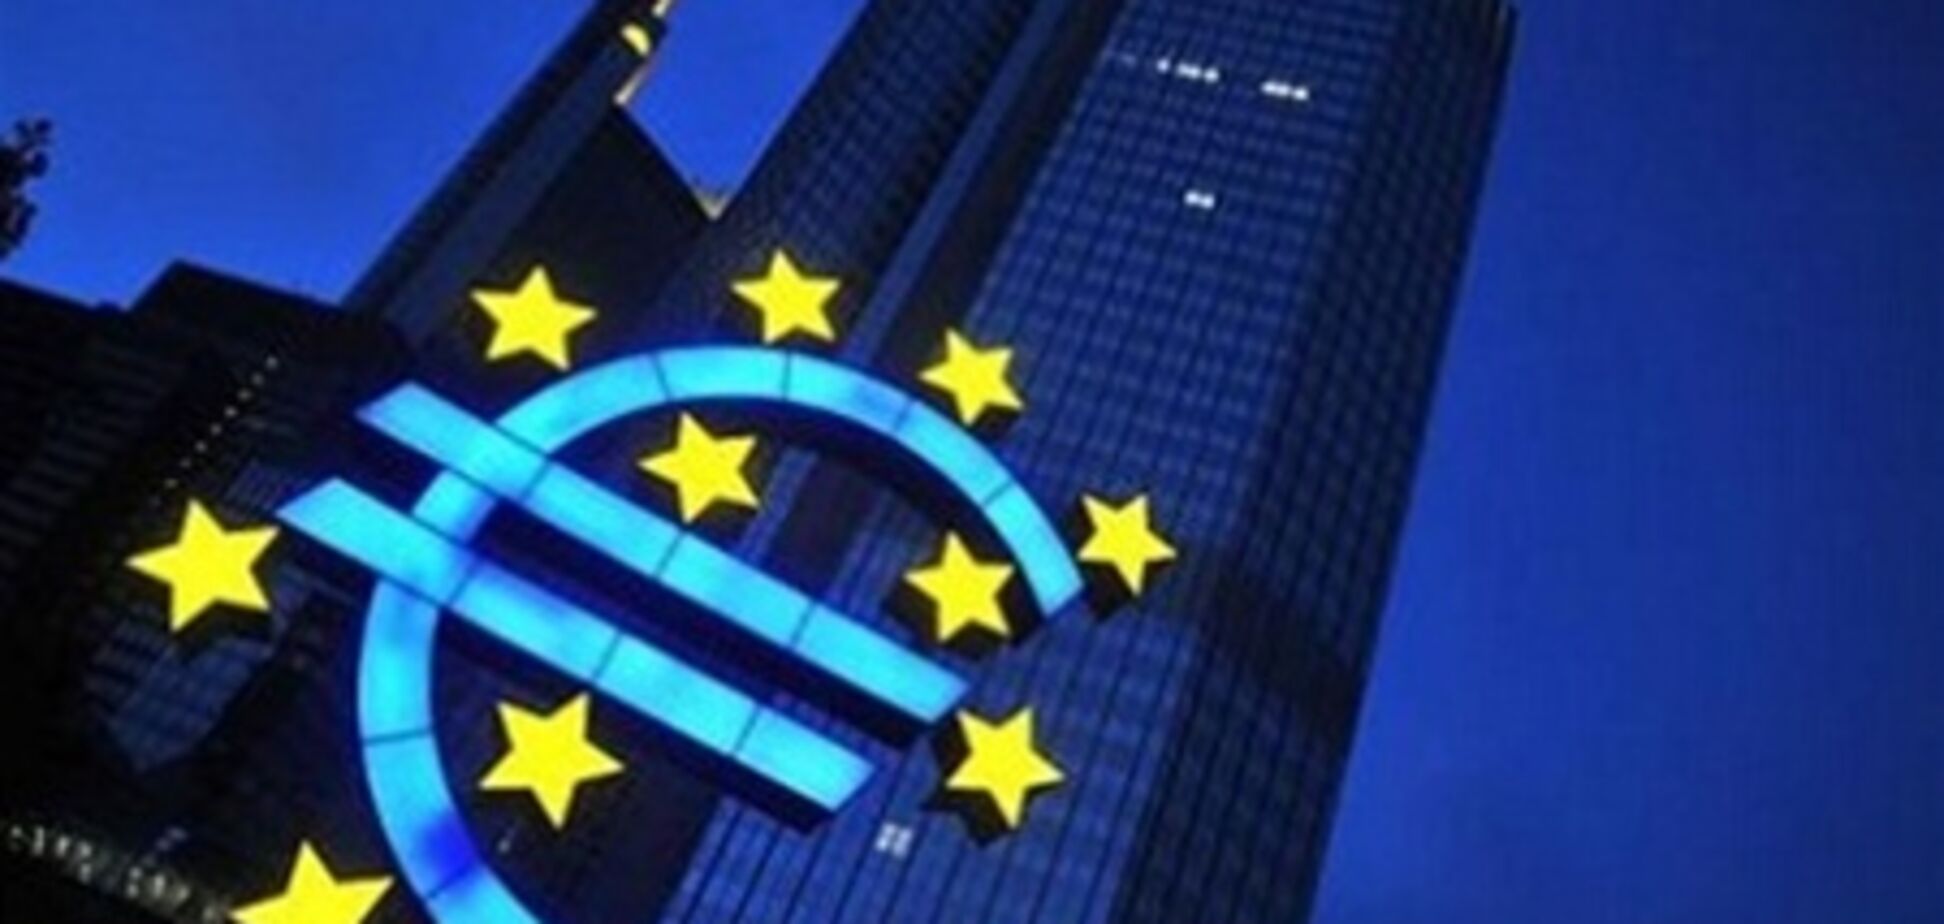 Польша может войти в еврозону в 2016 году - советник Коморовского